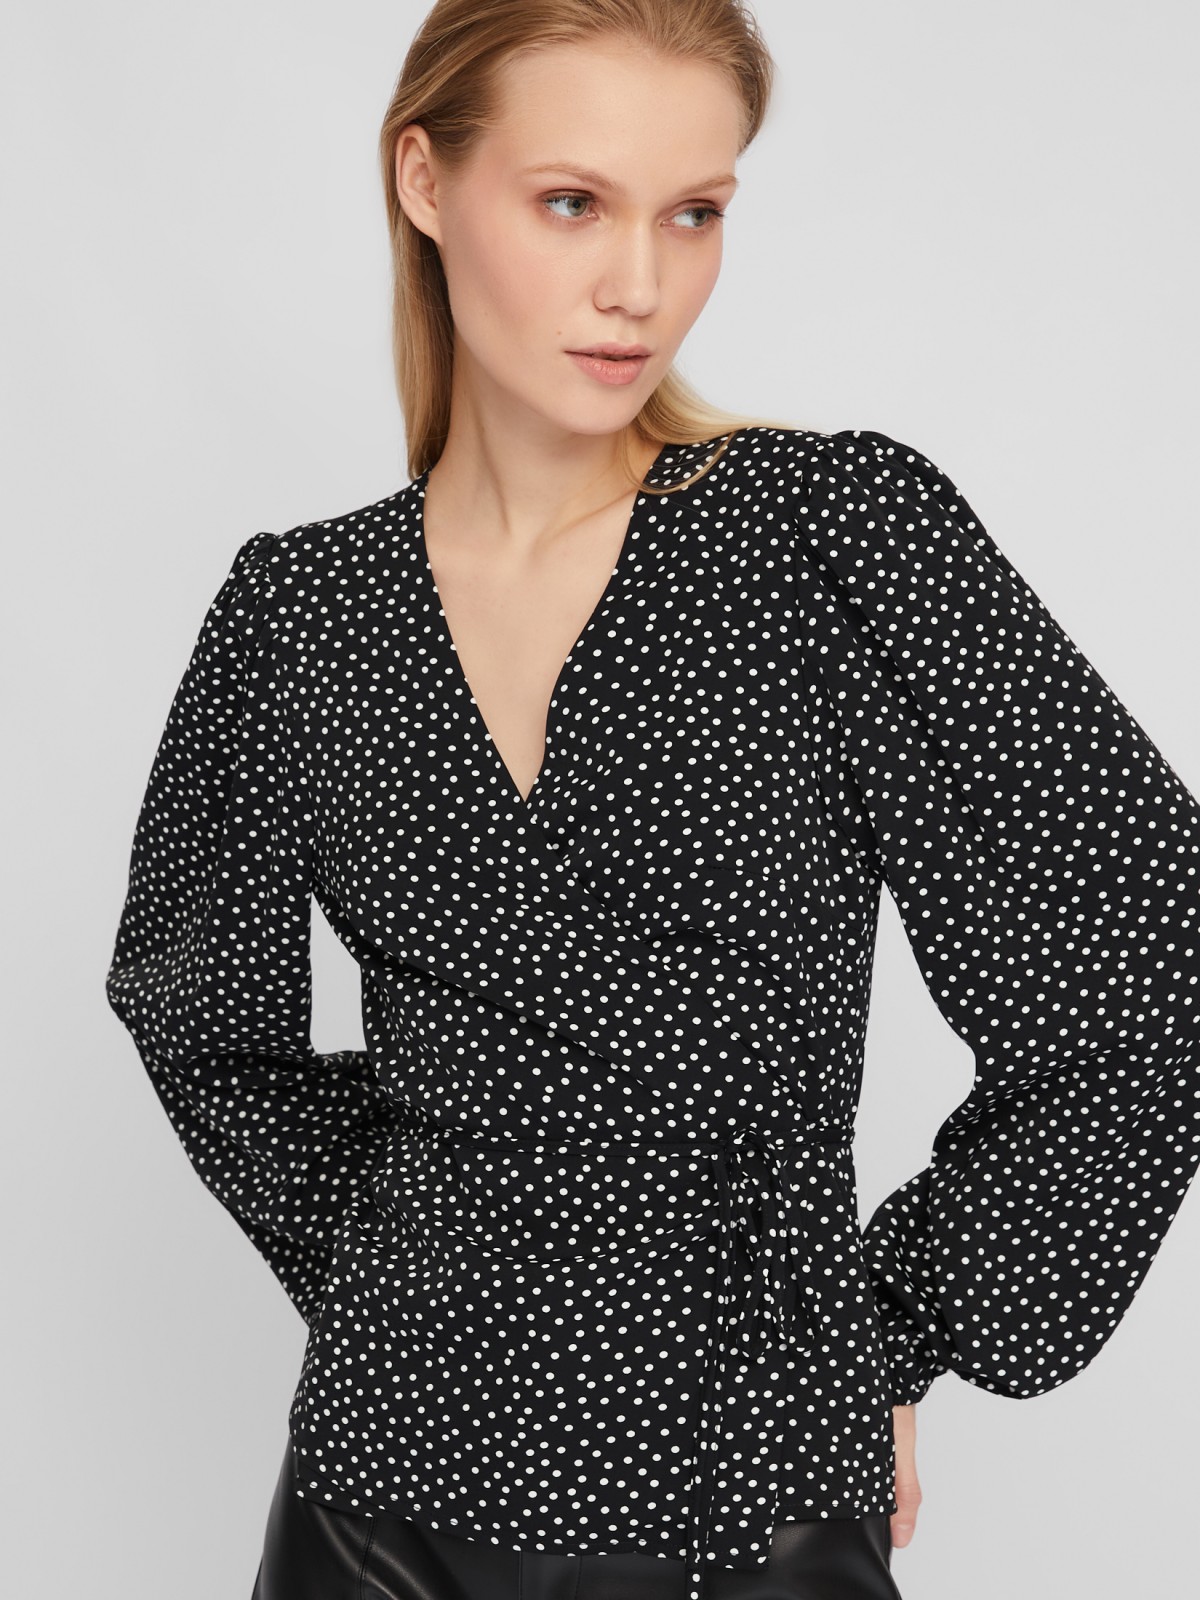 Блузка на запах с объёмным рукавом и принтом в горошек zolla 024111159191, цвет черный, размер XS - фото 1